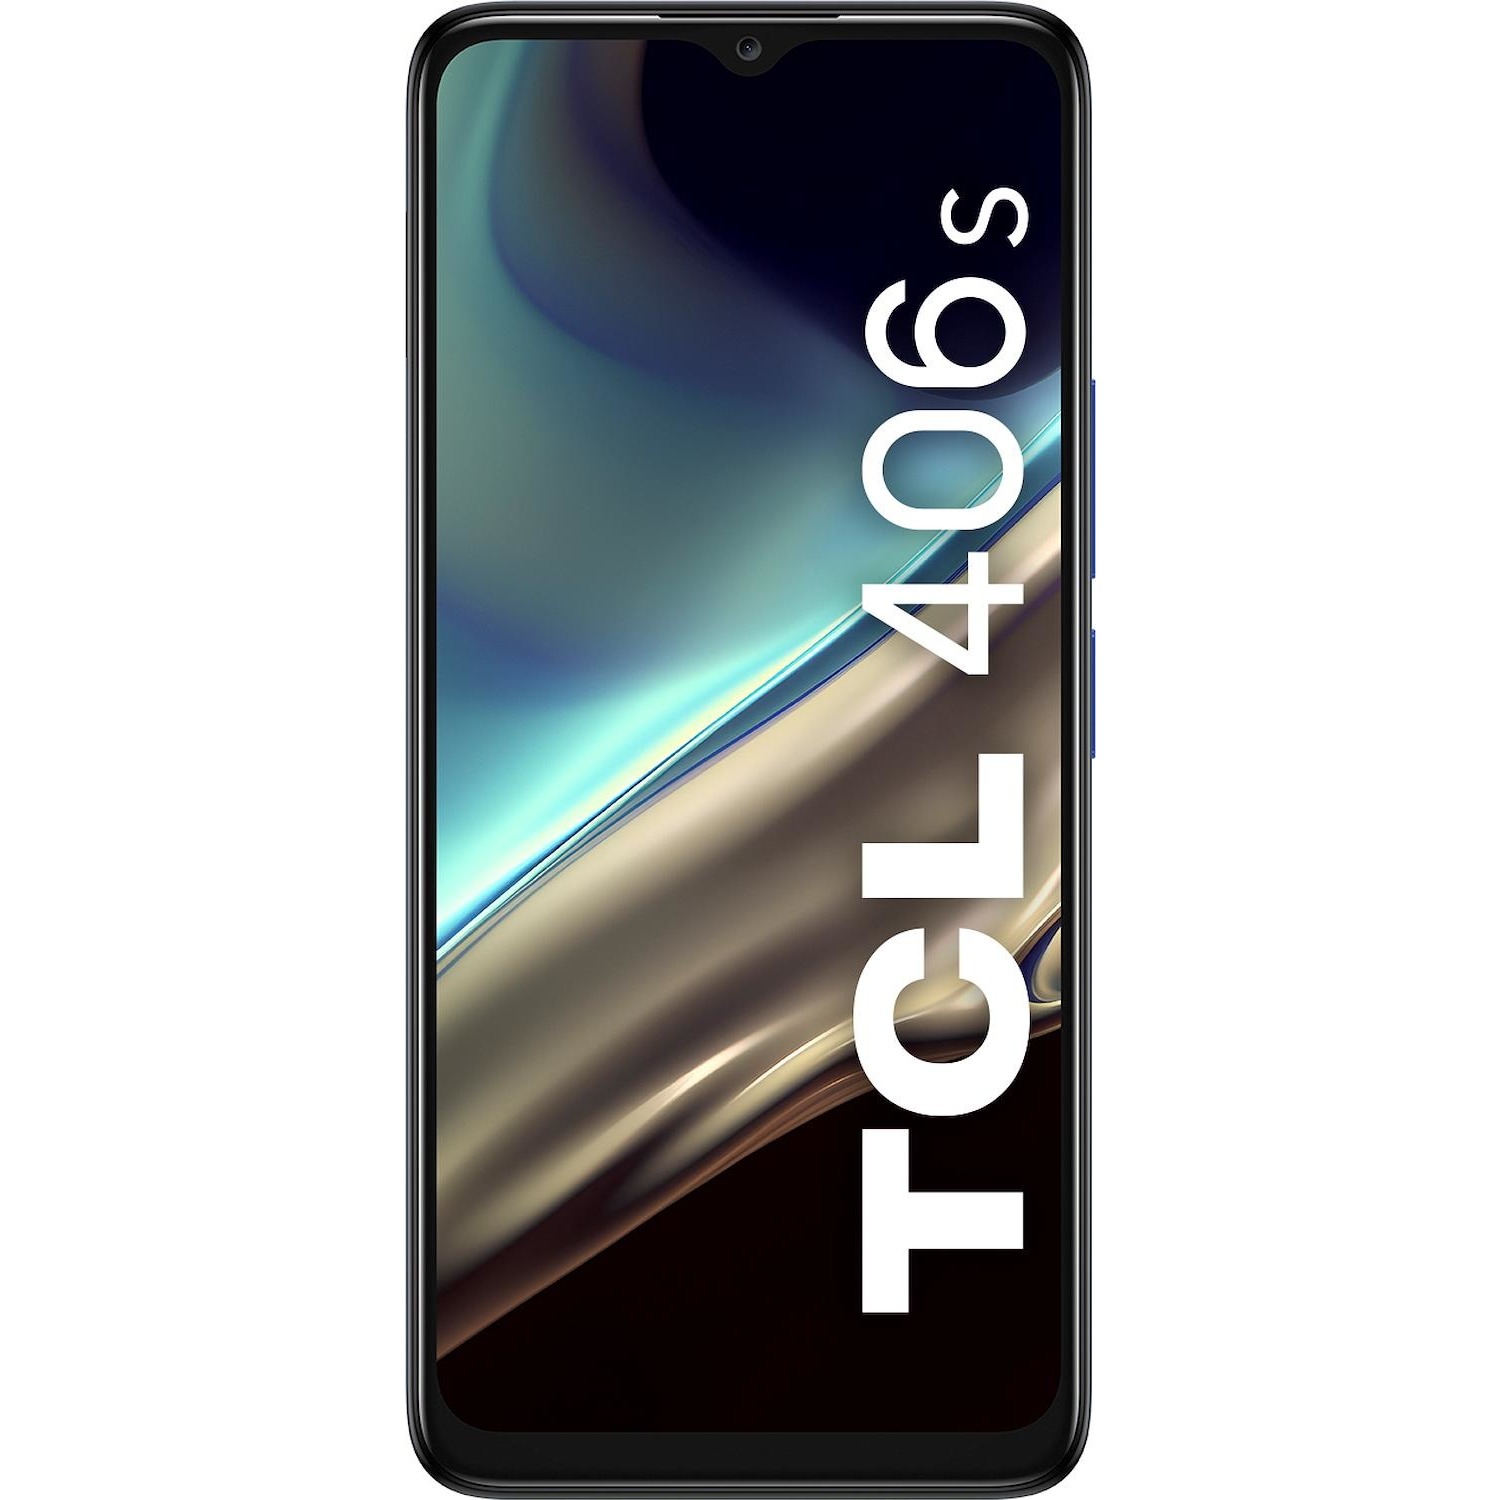 Immagine per Smartphone TCL 406s dark grey grigio da DIMOStore